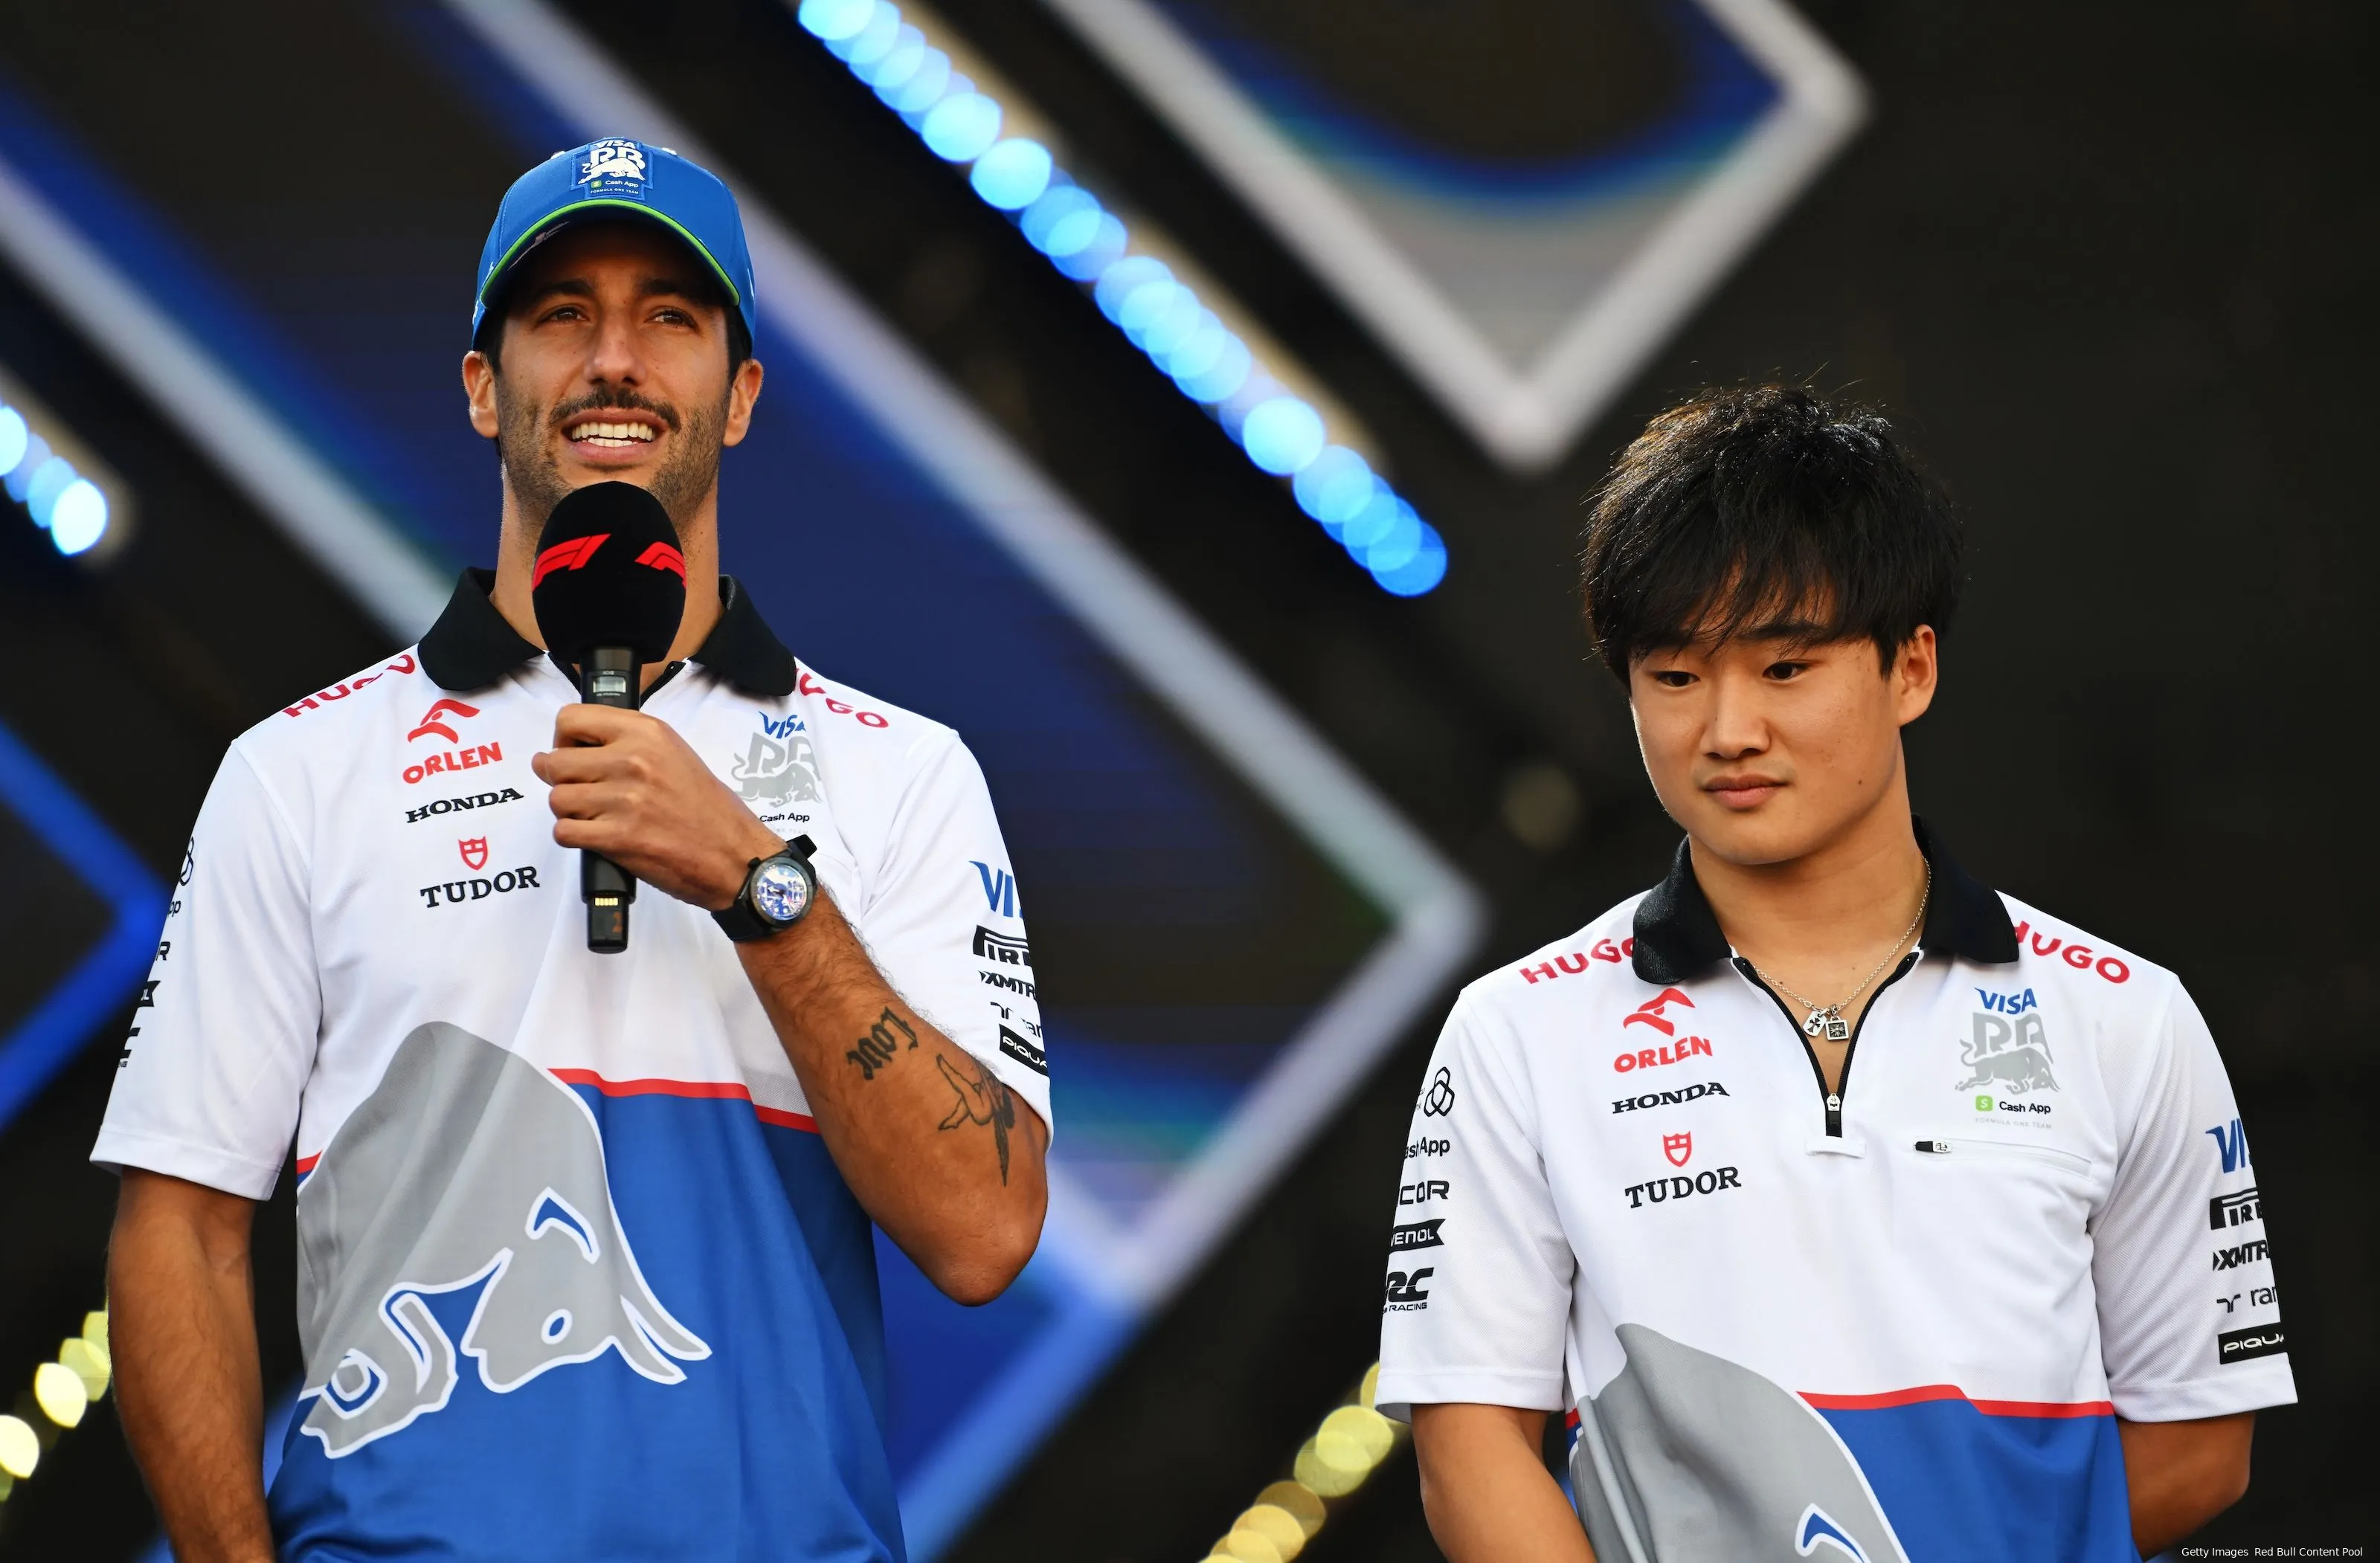 Ricciardo Rates Tsunoda's Performance Ahead Of Miami Grand Prix